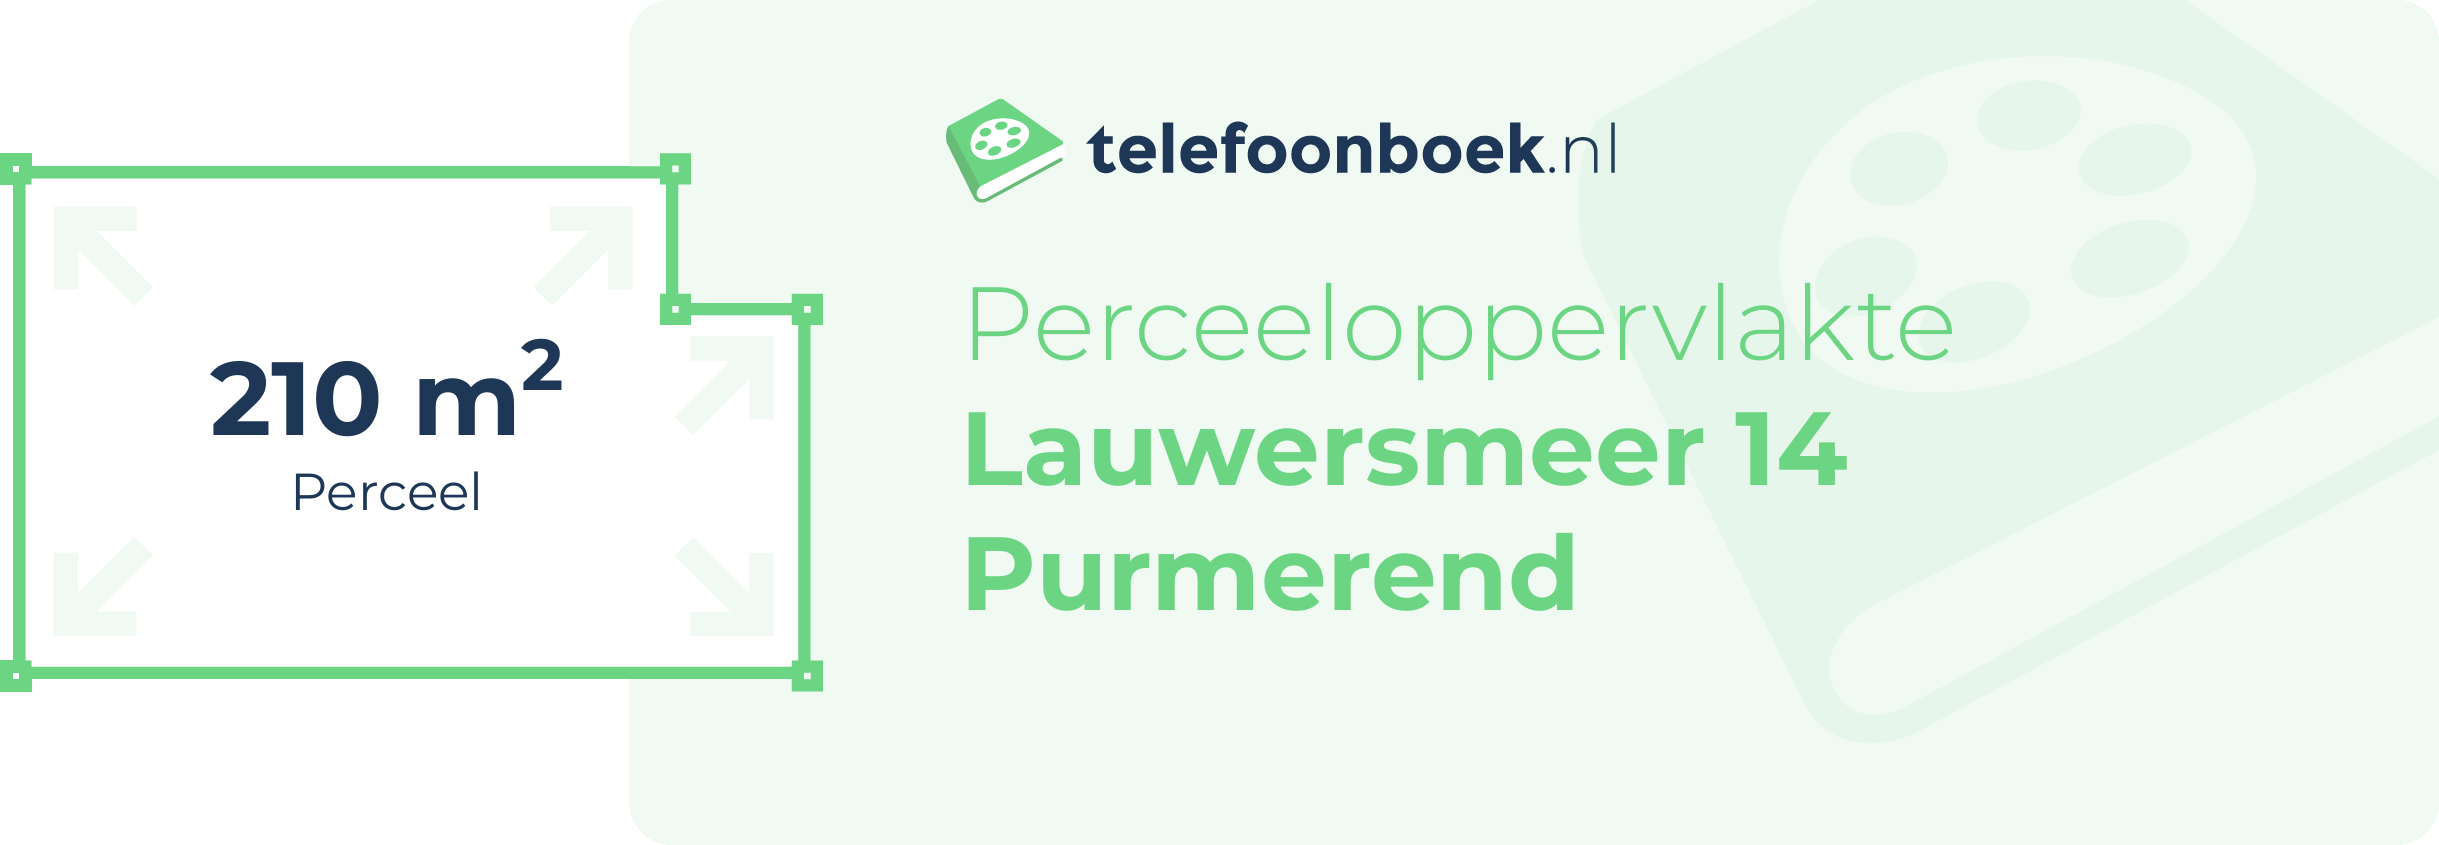 Perceeloppervlakte Lauwersmeer 14 Purmerend